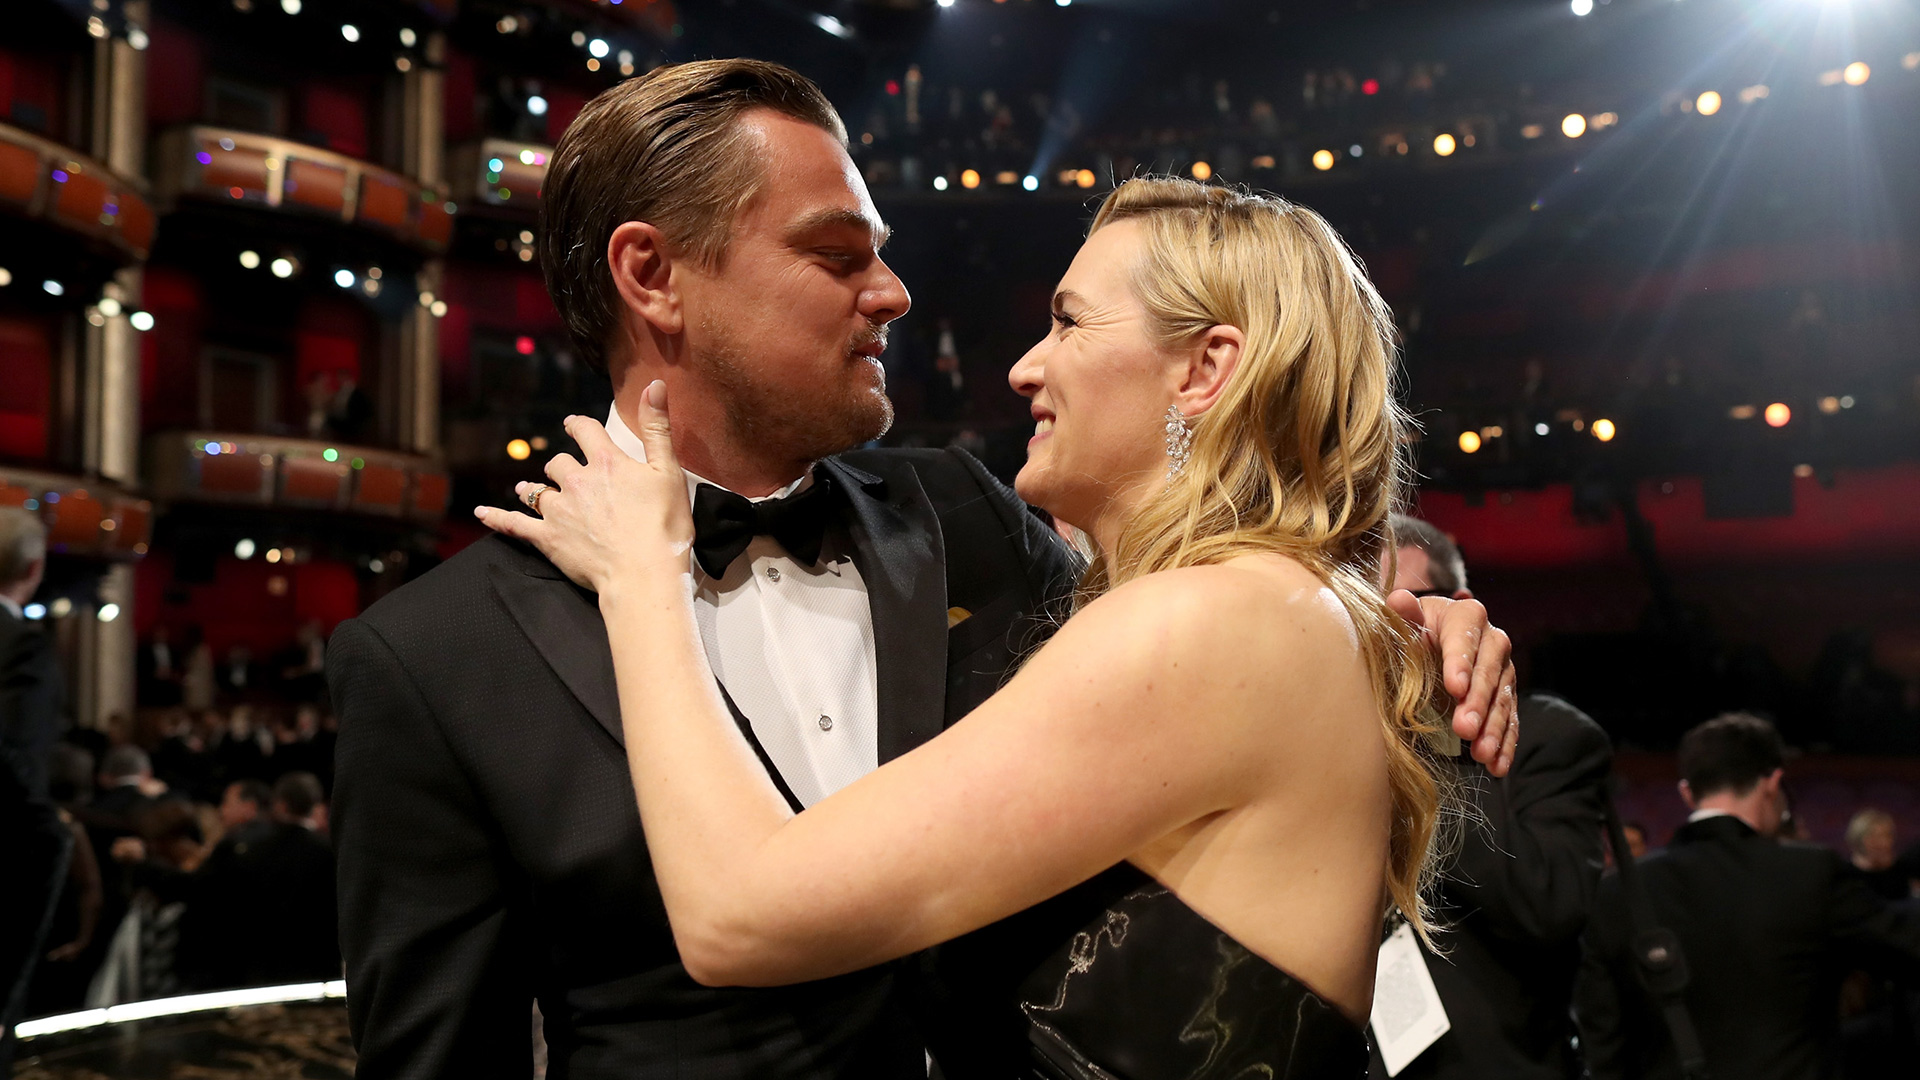 La noche que Leonardo DiCaprio ganó el Oscar. A su lado, Kate Winslet (Getty Images)